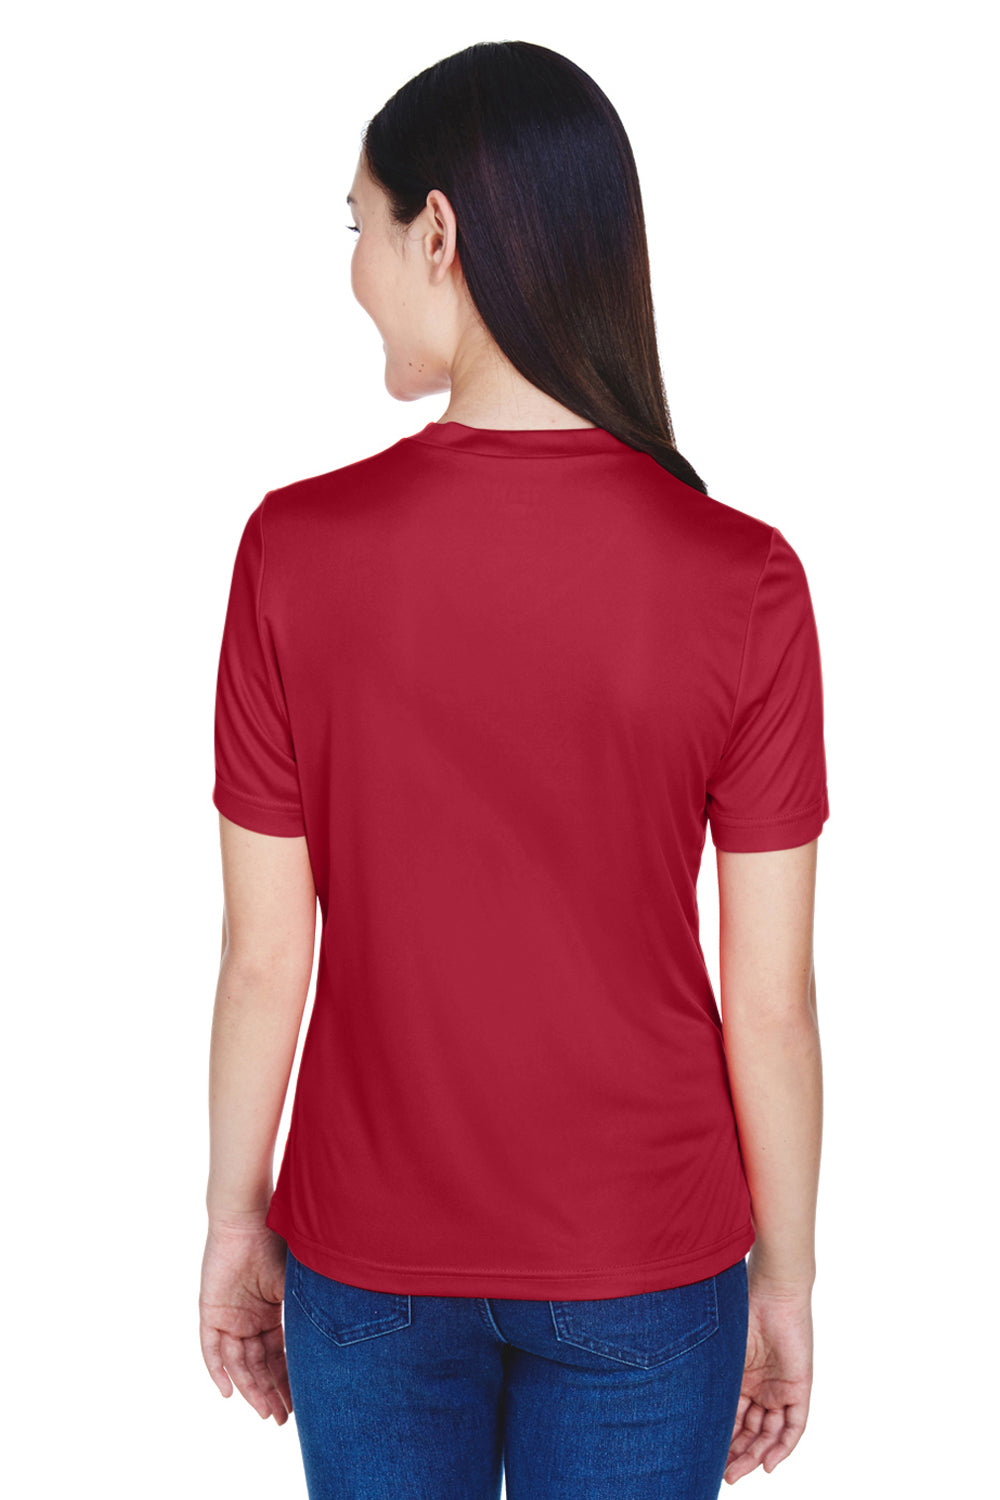 Team 365 TT11W Womens Zone Performance Moisture Wicking Short Sleeve V-Neck T-Shirt Scarlet Red Back